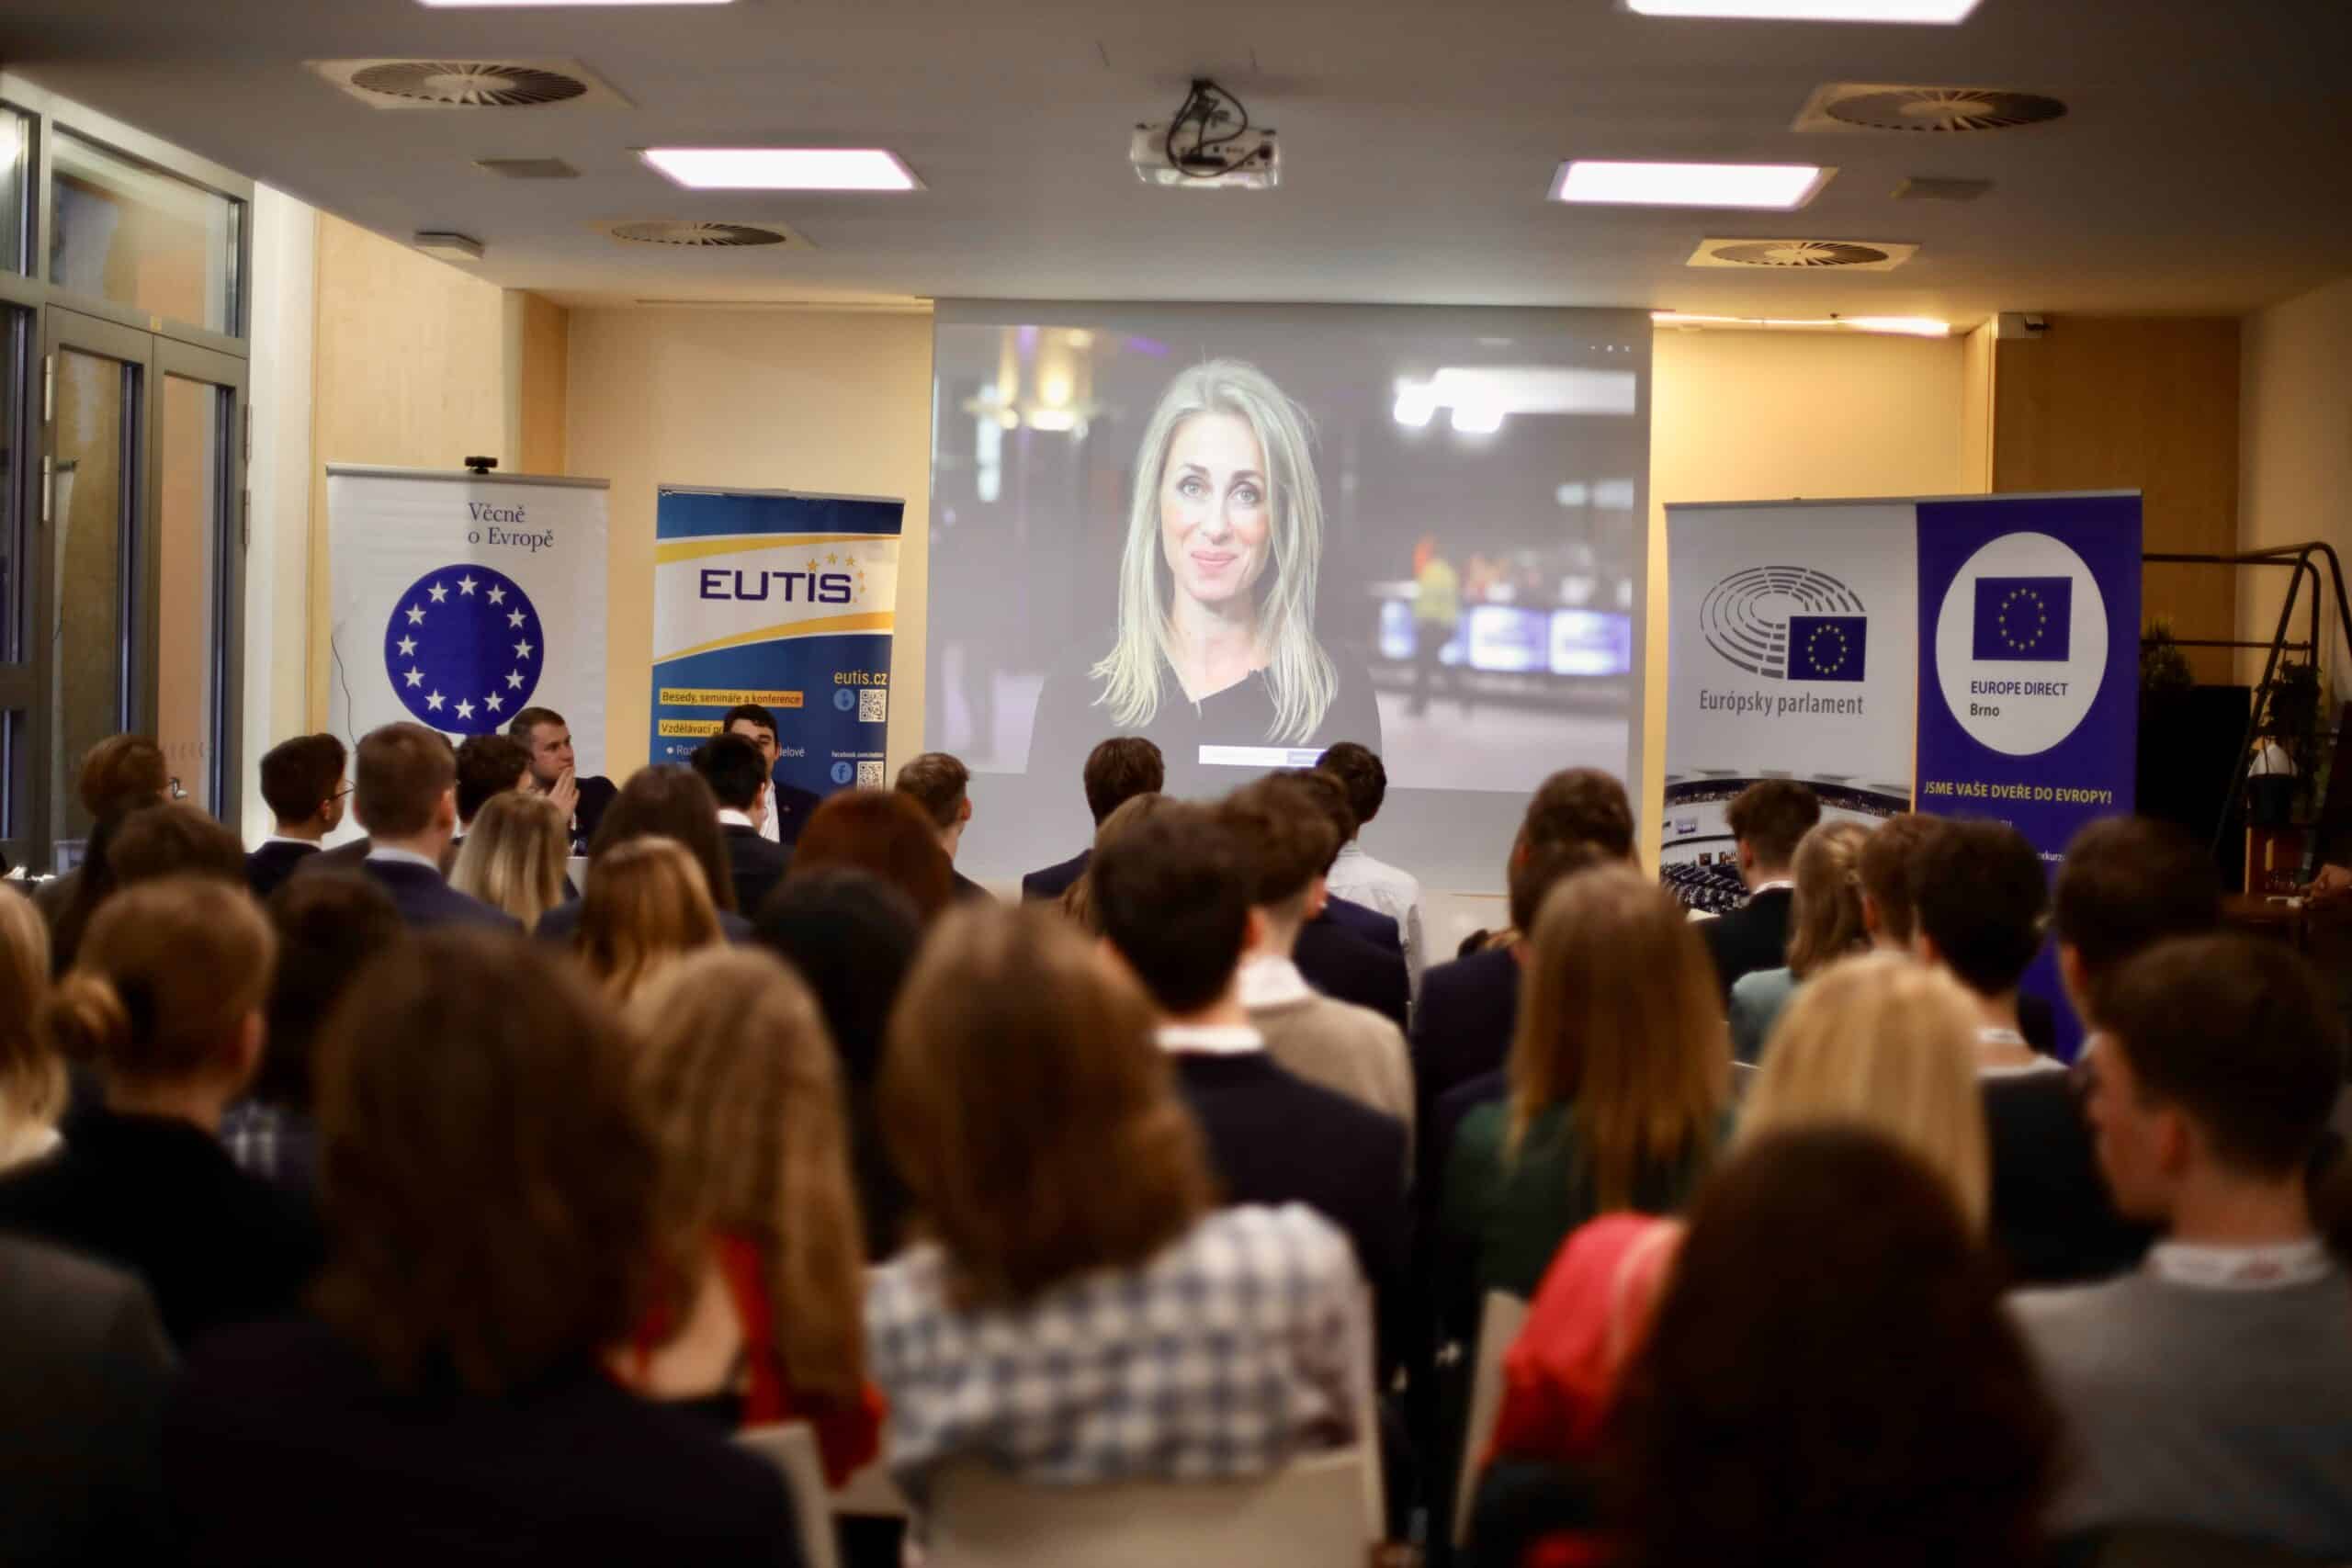 Přečtete si více ze článku Modelového zasedání institucí EU v Brně: studenti si vyzkoušeli jednání v Radě EU a Evropském parlamentu a debatovali s významnými hosty